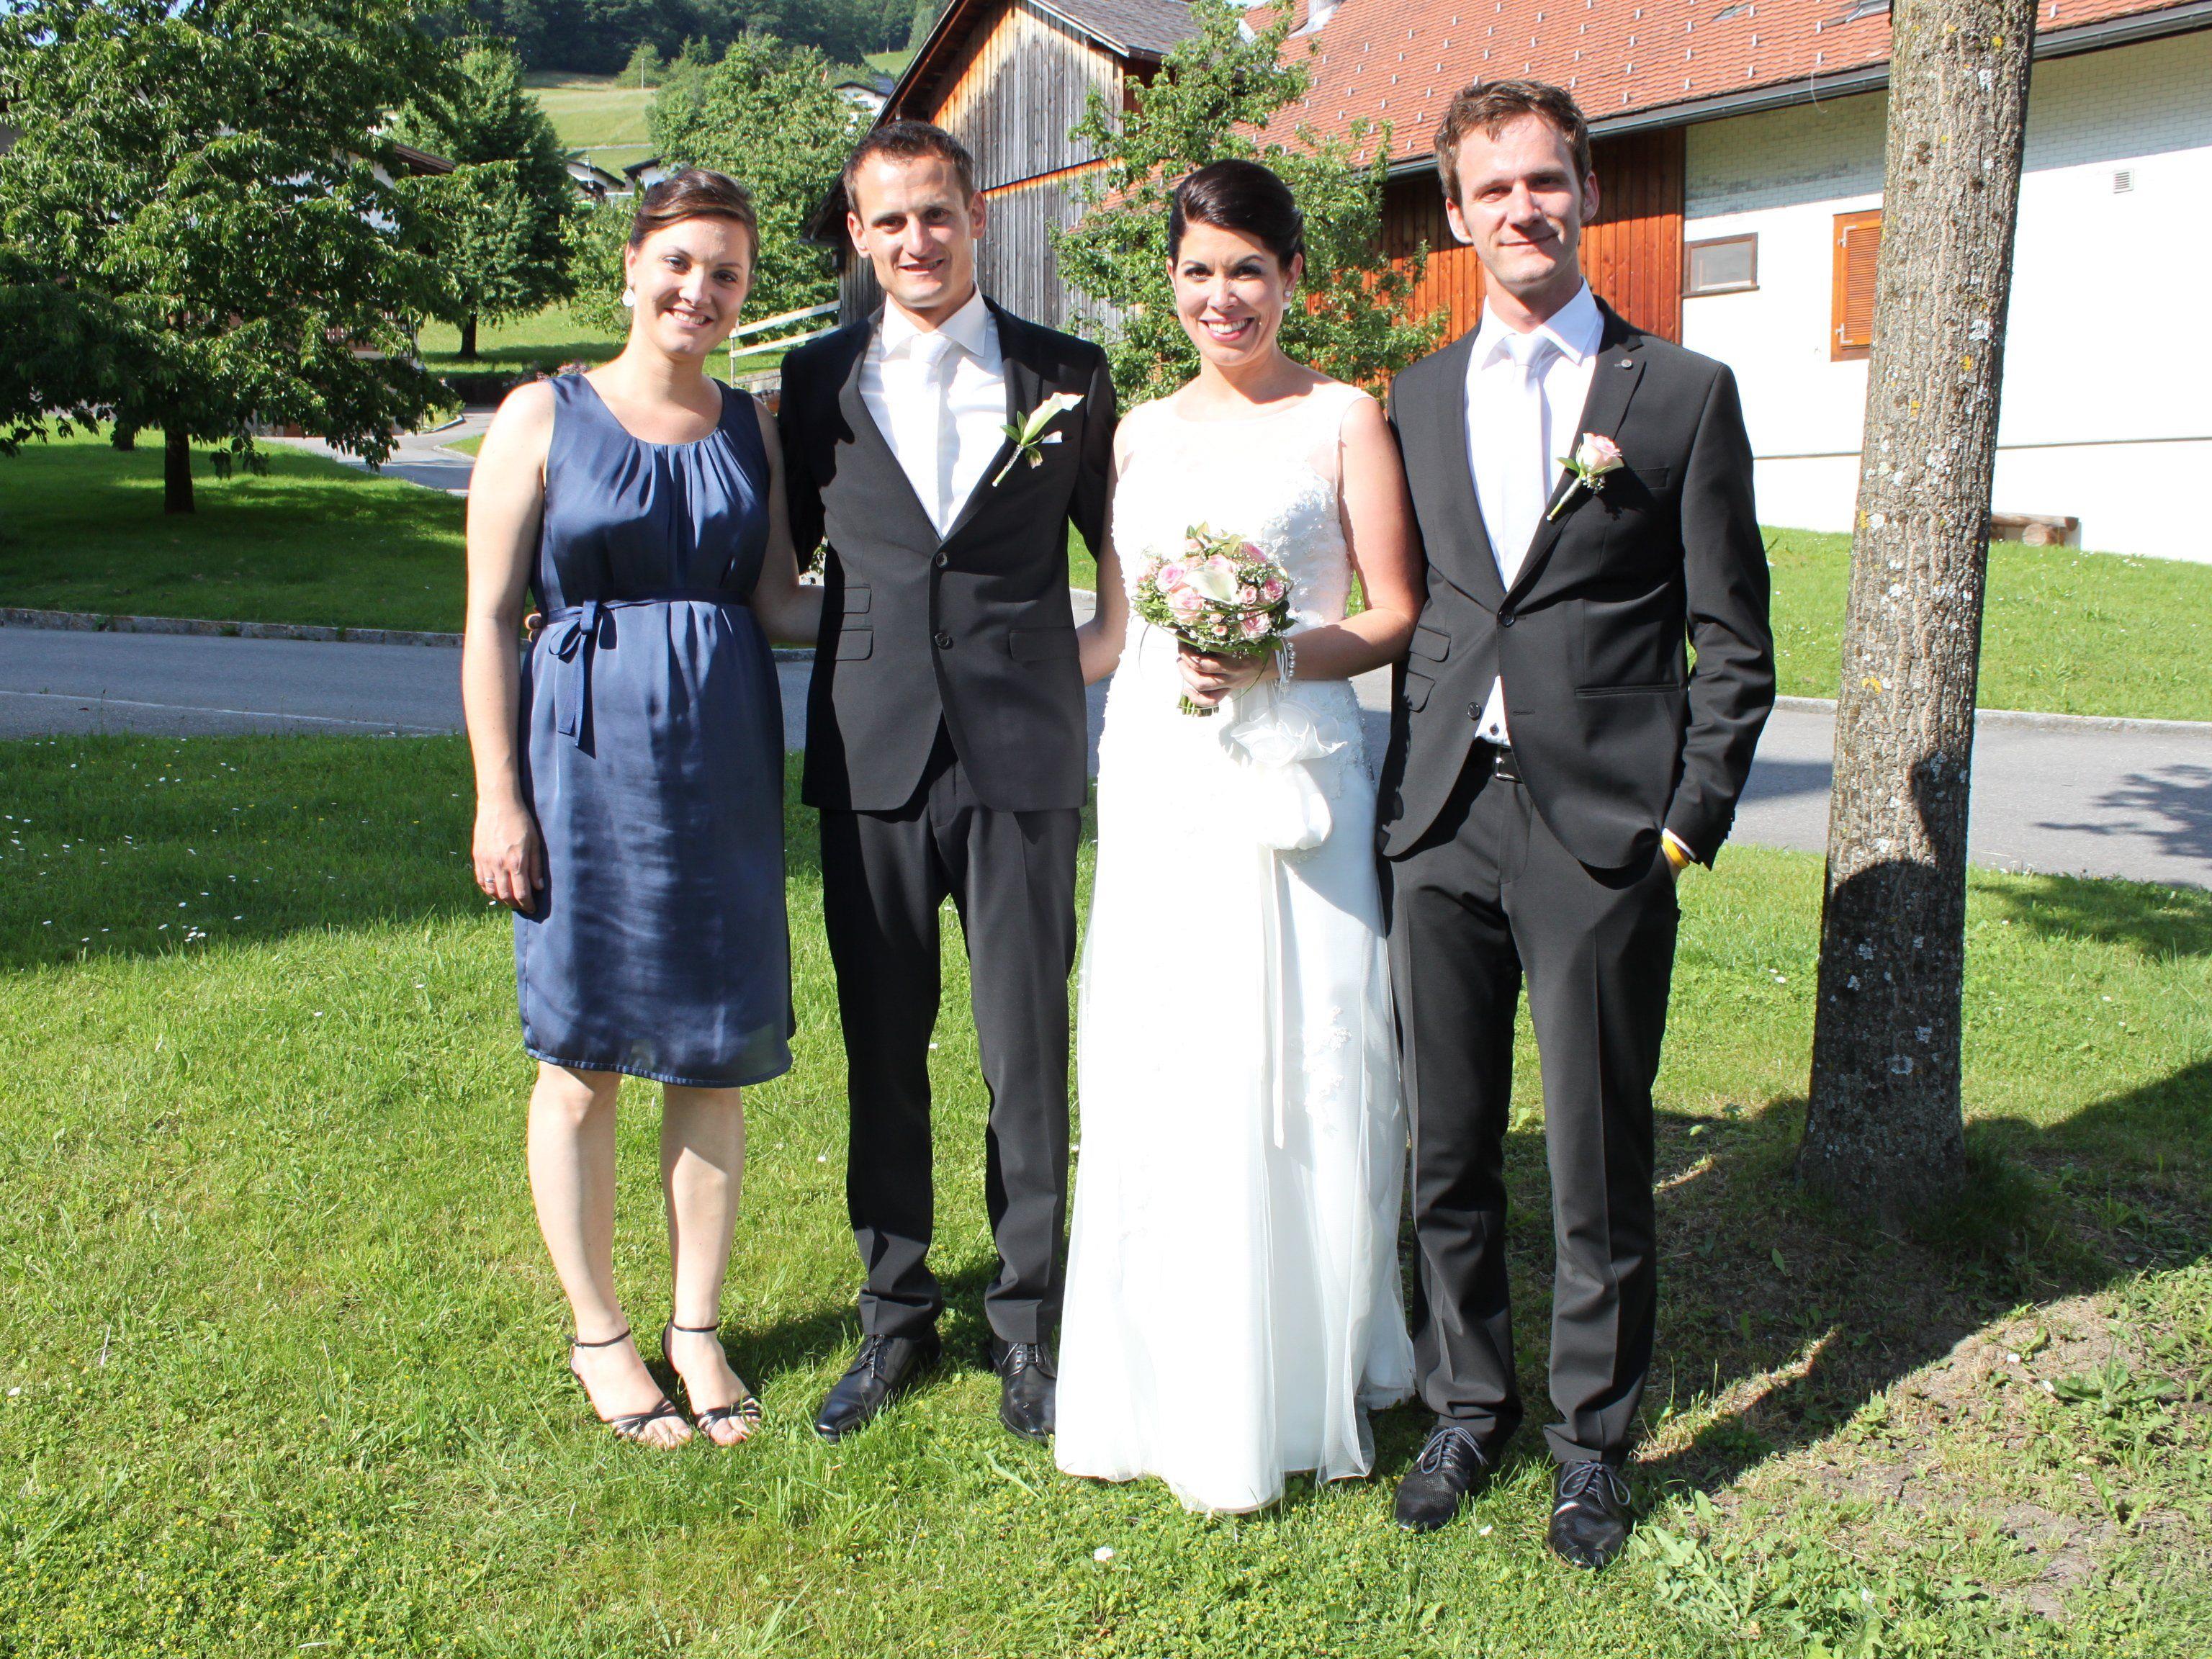 Gratulation zur Hochzeit Julia und Robert Kathan, im Bild mit den Trauzeugen Anke Flatz und Johannes Summer.